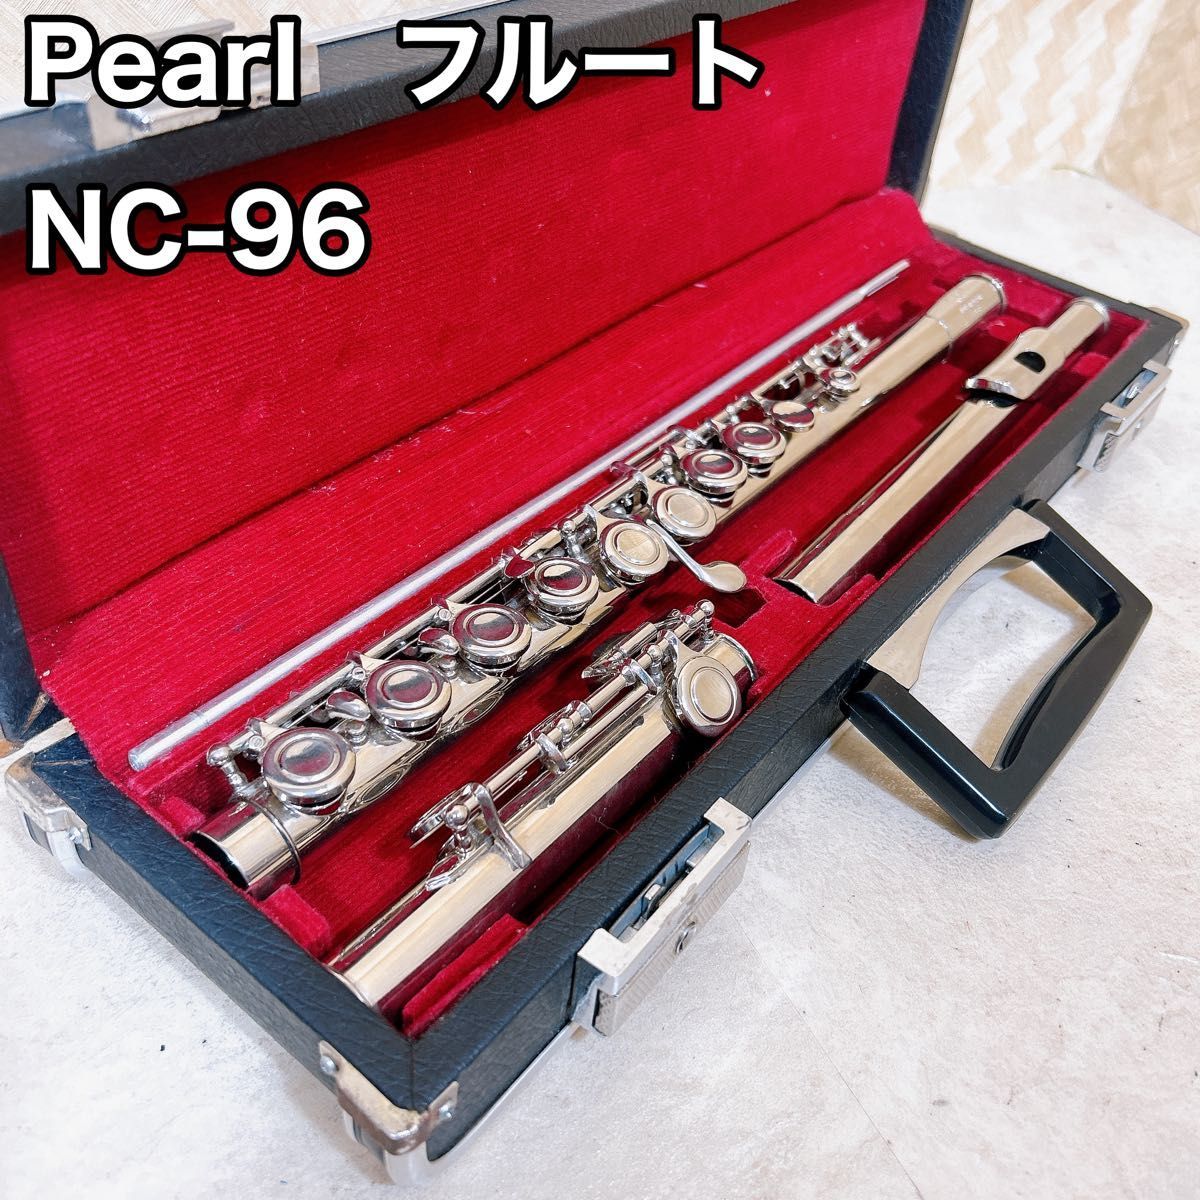 Pearl パール NC-96 フルート ケース 管楽器 初心者 入門用